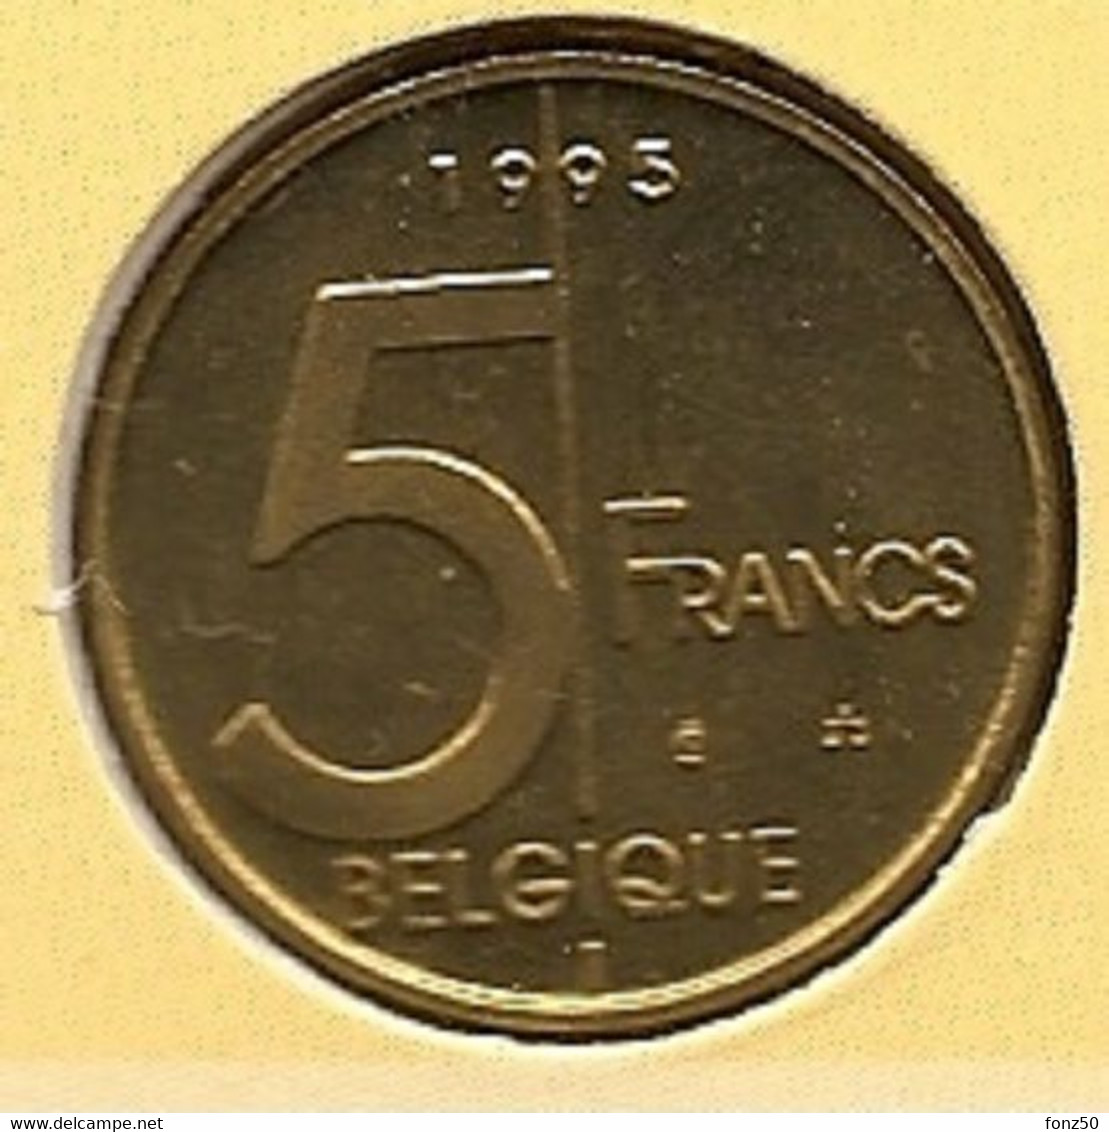 5 Frank 1995 Frans * Uit Muntenset * FDC - 5 Francs